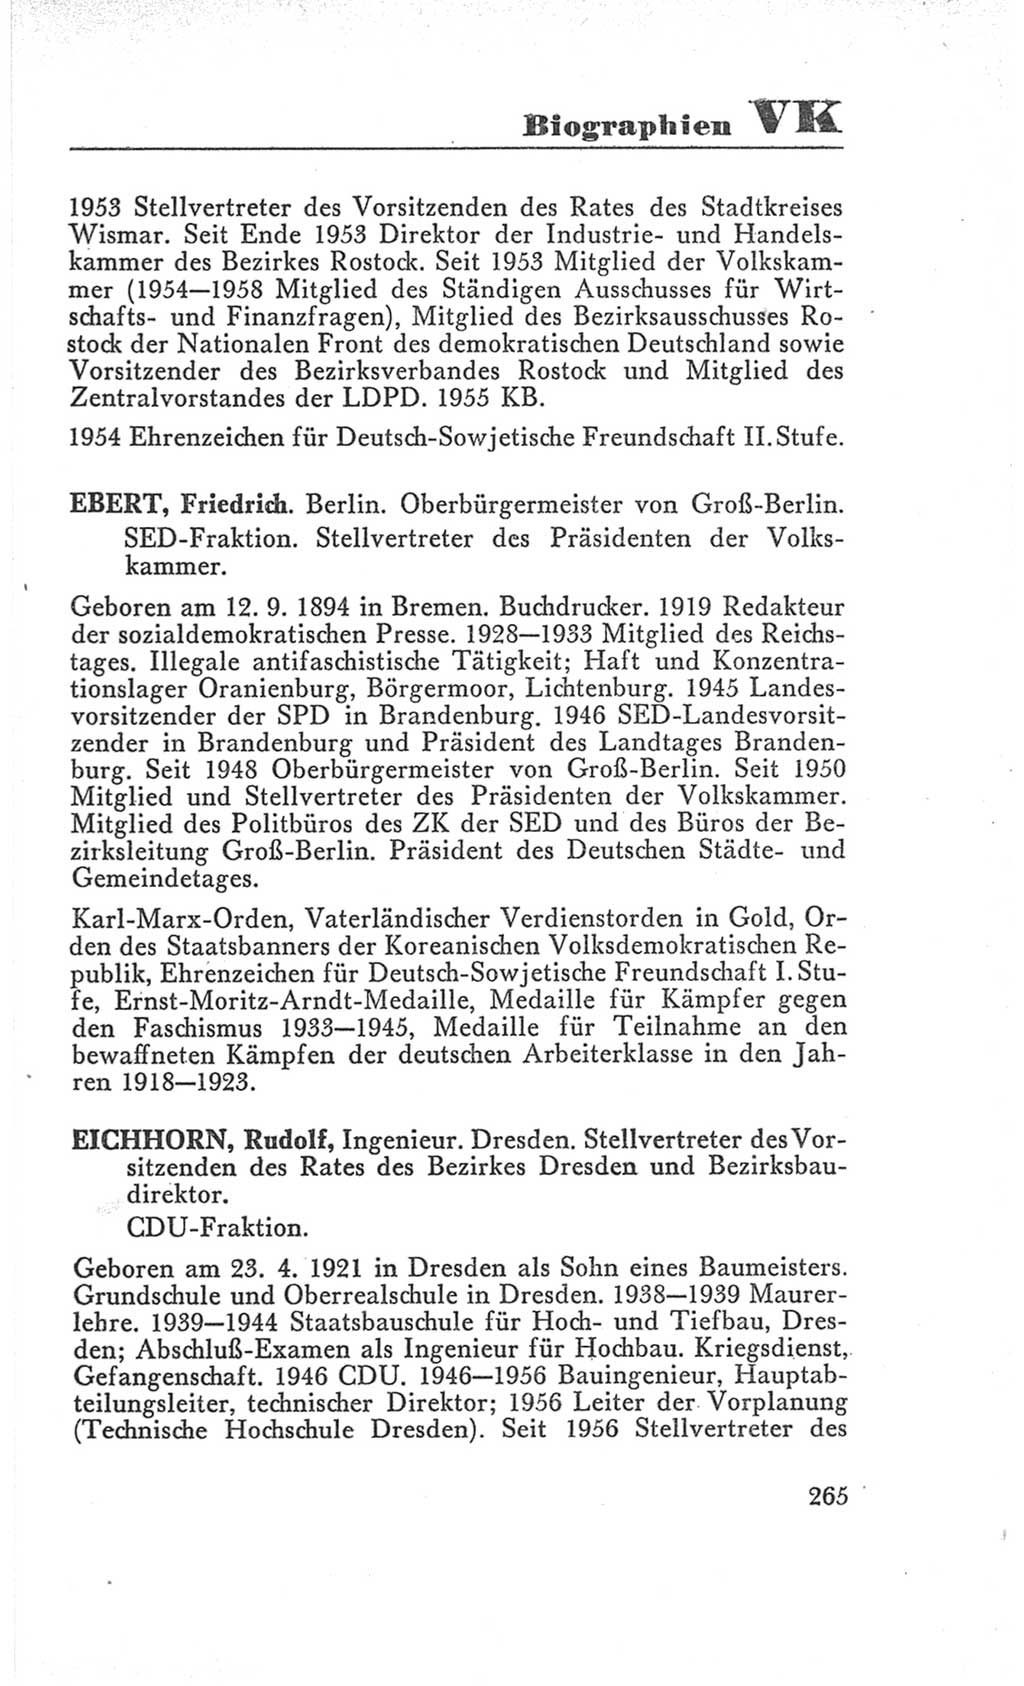 Handbuch der Volkskammer (VK) der Deutschen Demokratischen Republik (DDR), 3. Wahlperiode 1958-1963, Seite 265 (Hdb. VK. DDR 3. WP. 1958-1963, S. 265)